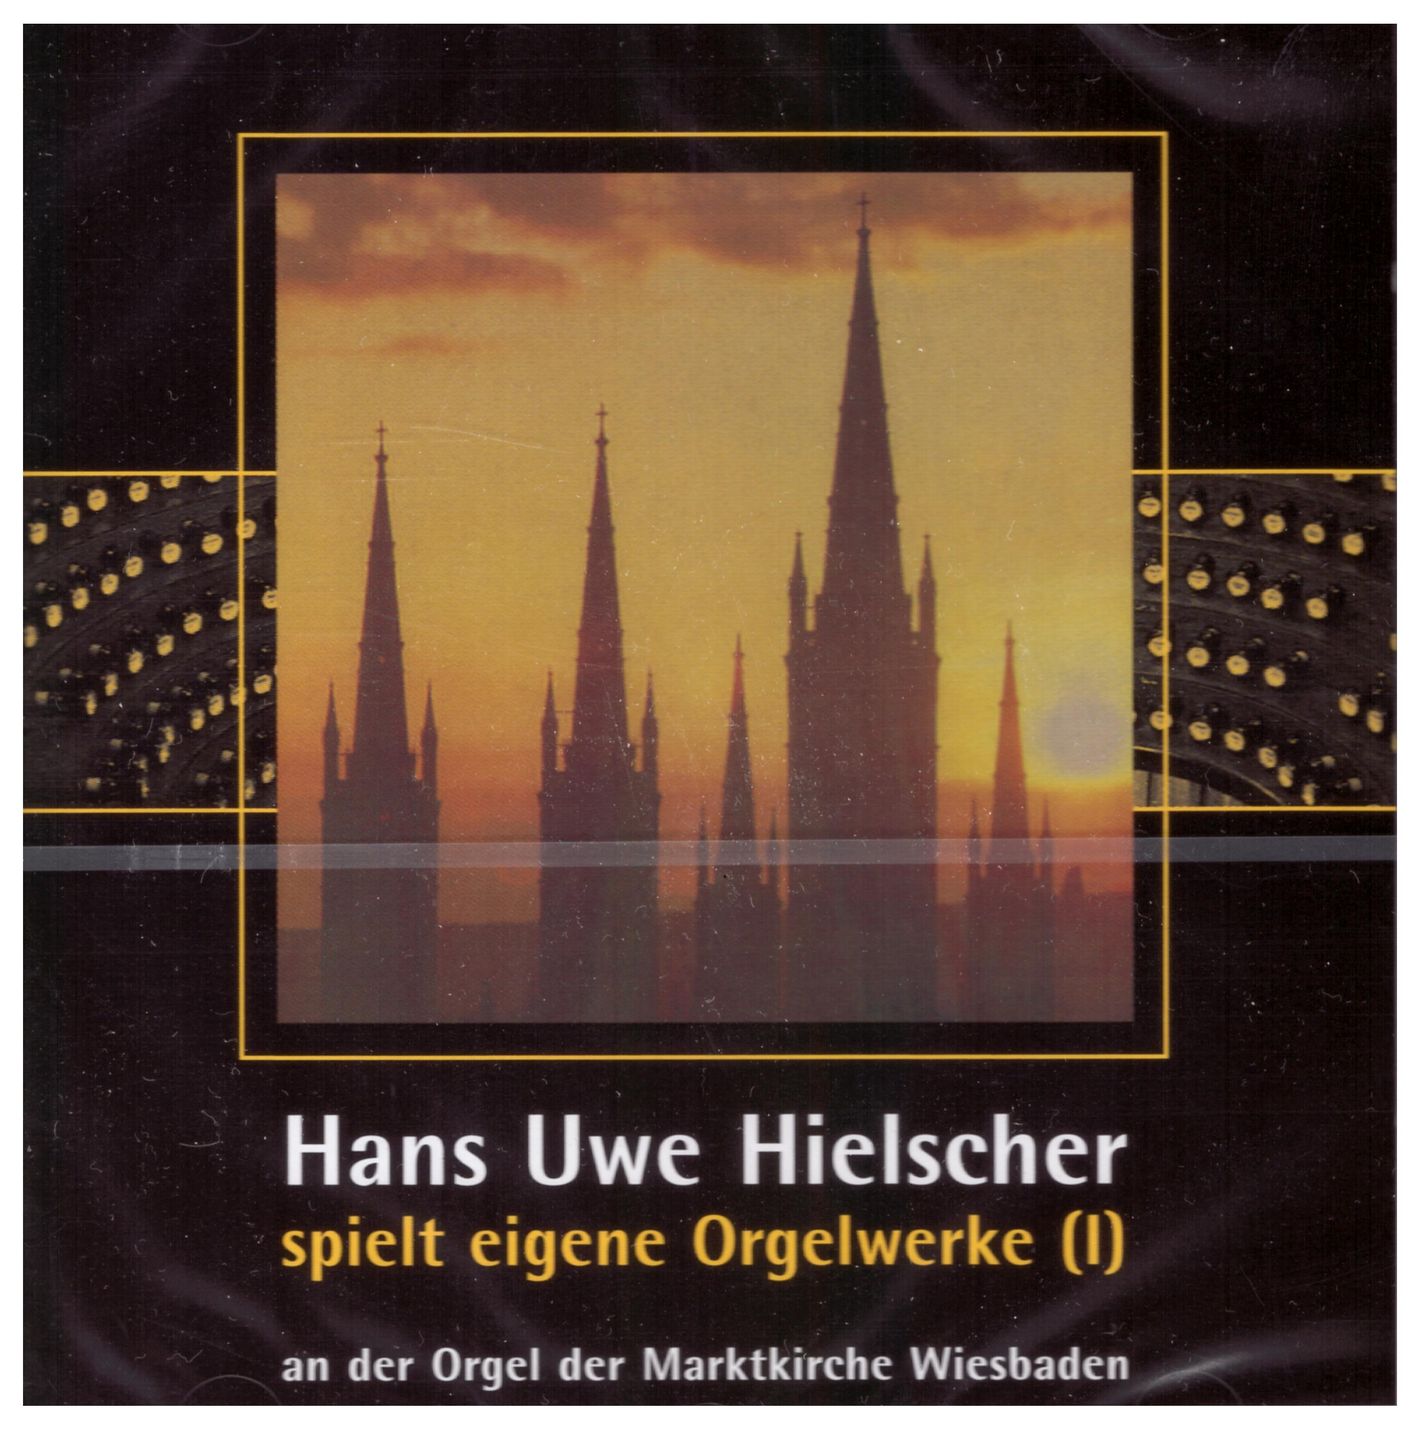 Hans Uwe Hielscher spielt eigene Orgelwerke (I)